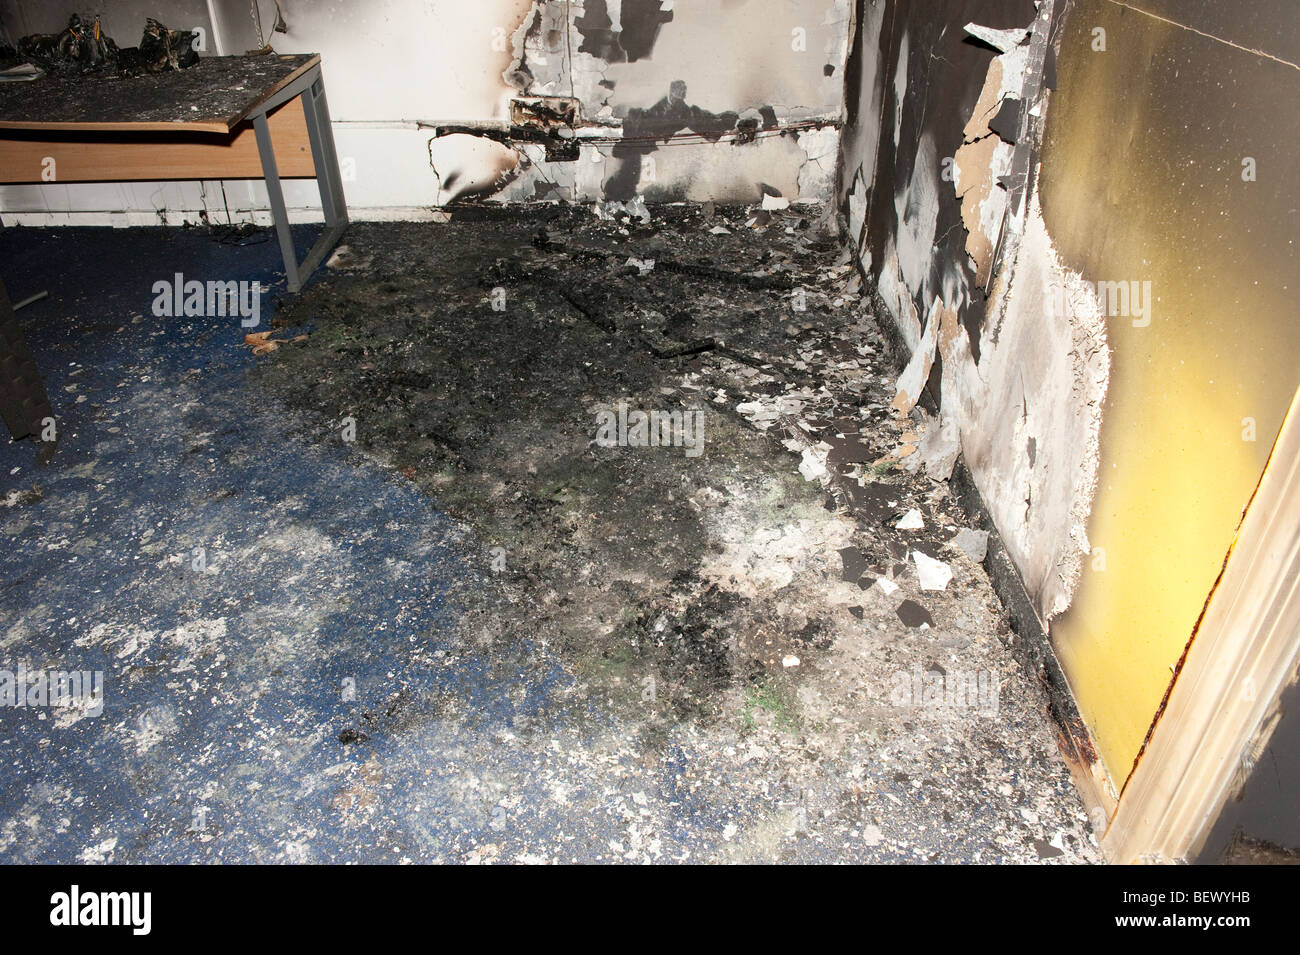 Fire montrant les dégâts et brûlé un bureau Banque D'Images